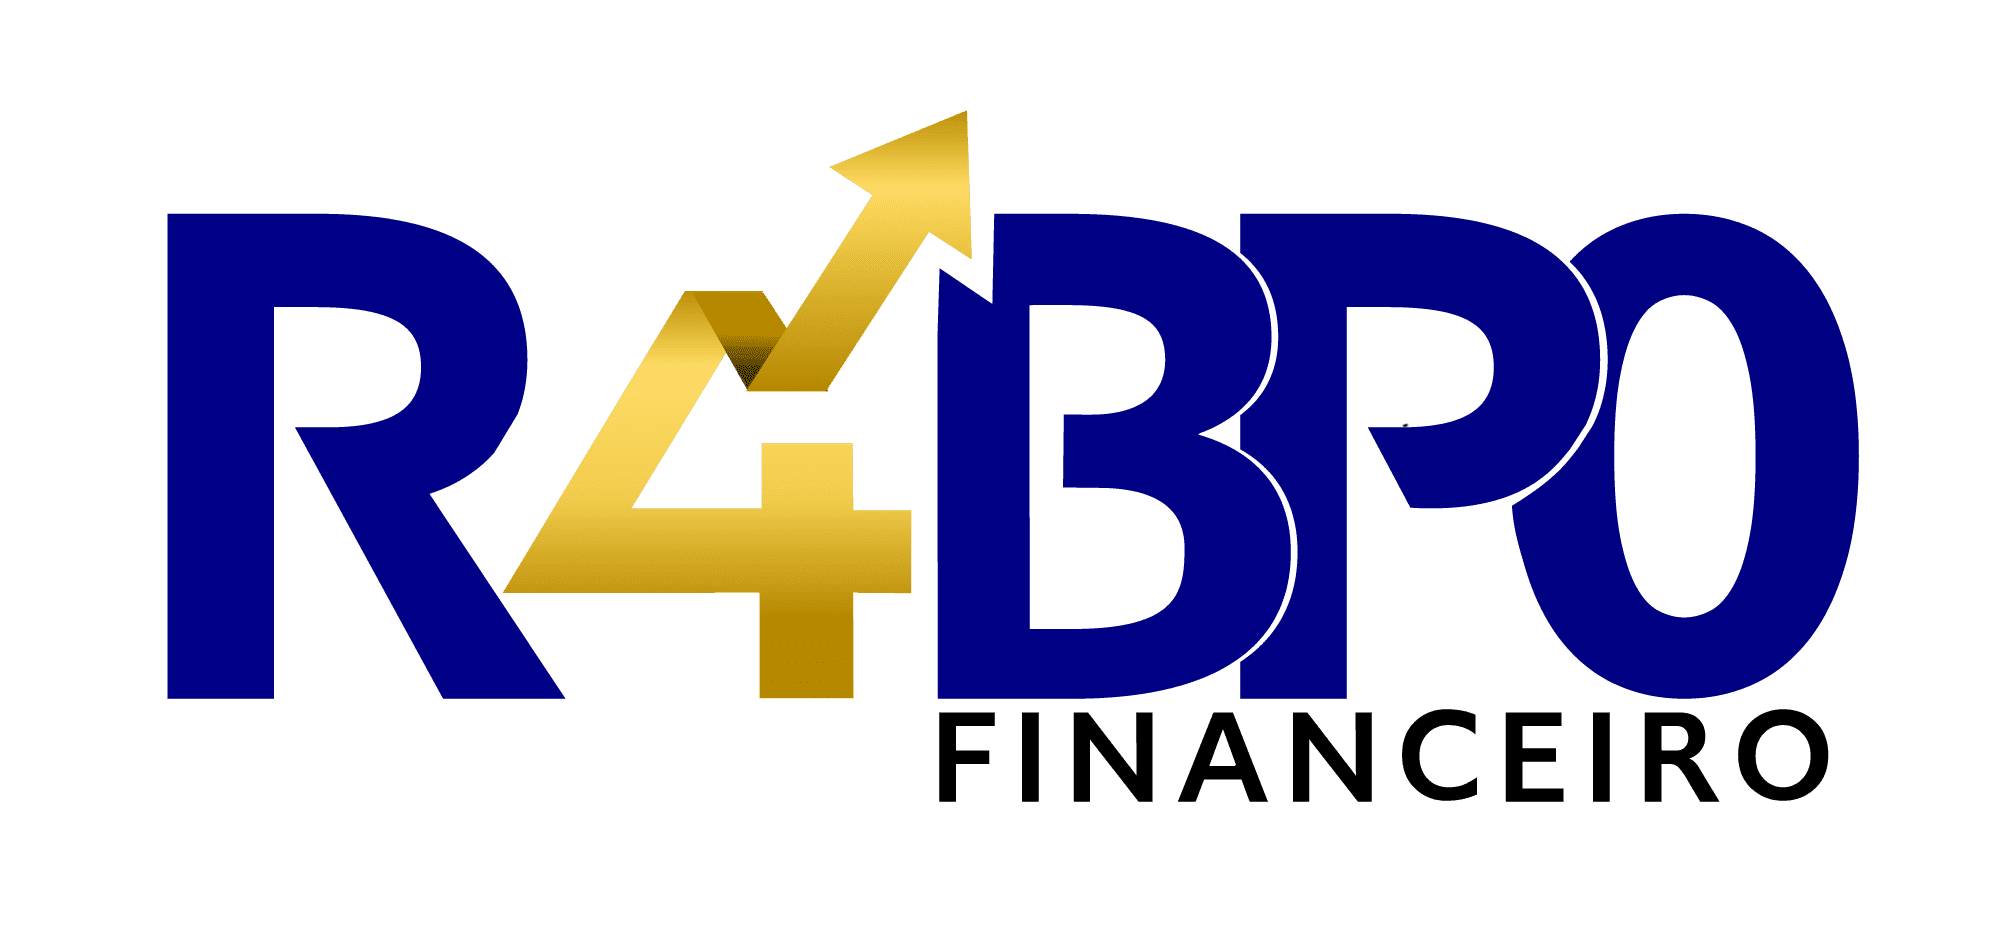 R4 BPO Financeiro